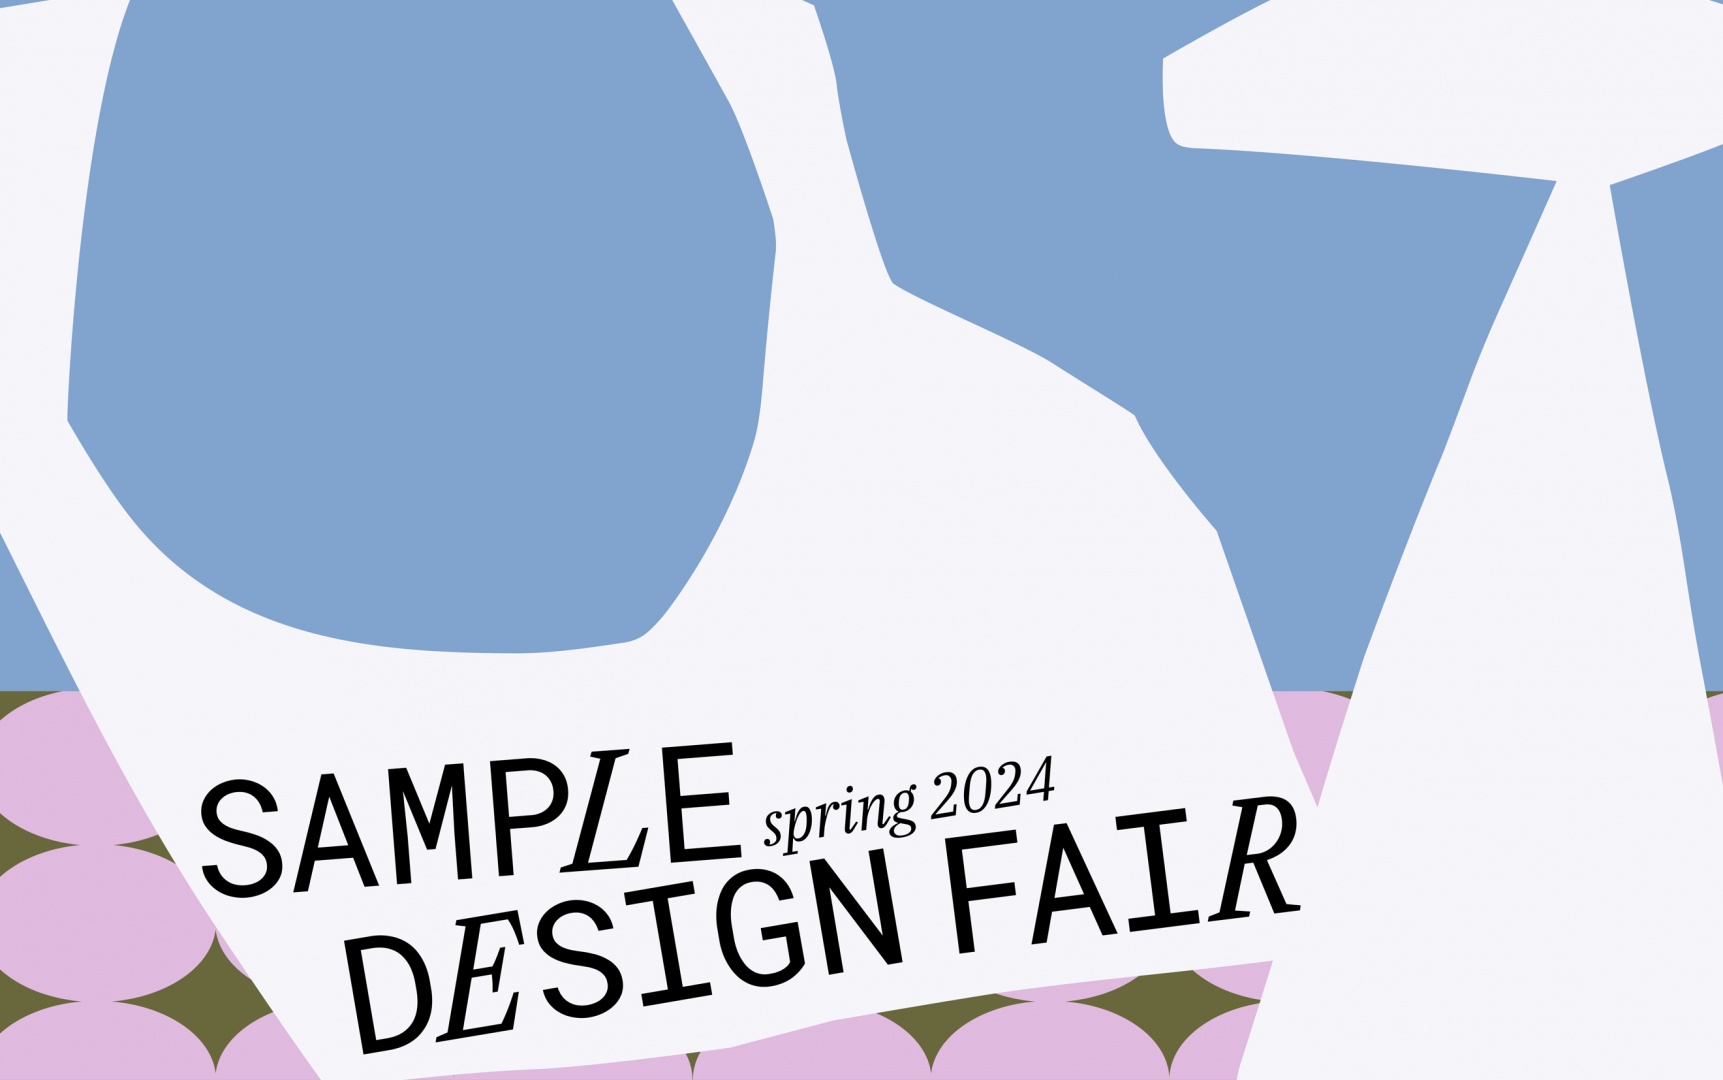 SAMPLE запускает собственную ярмарку современного дизайна